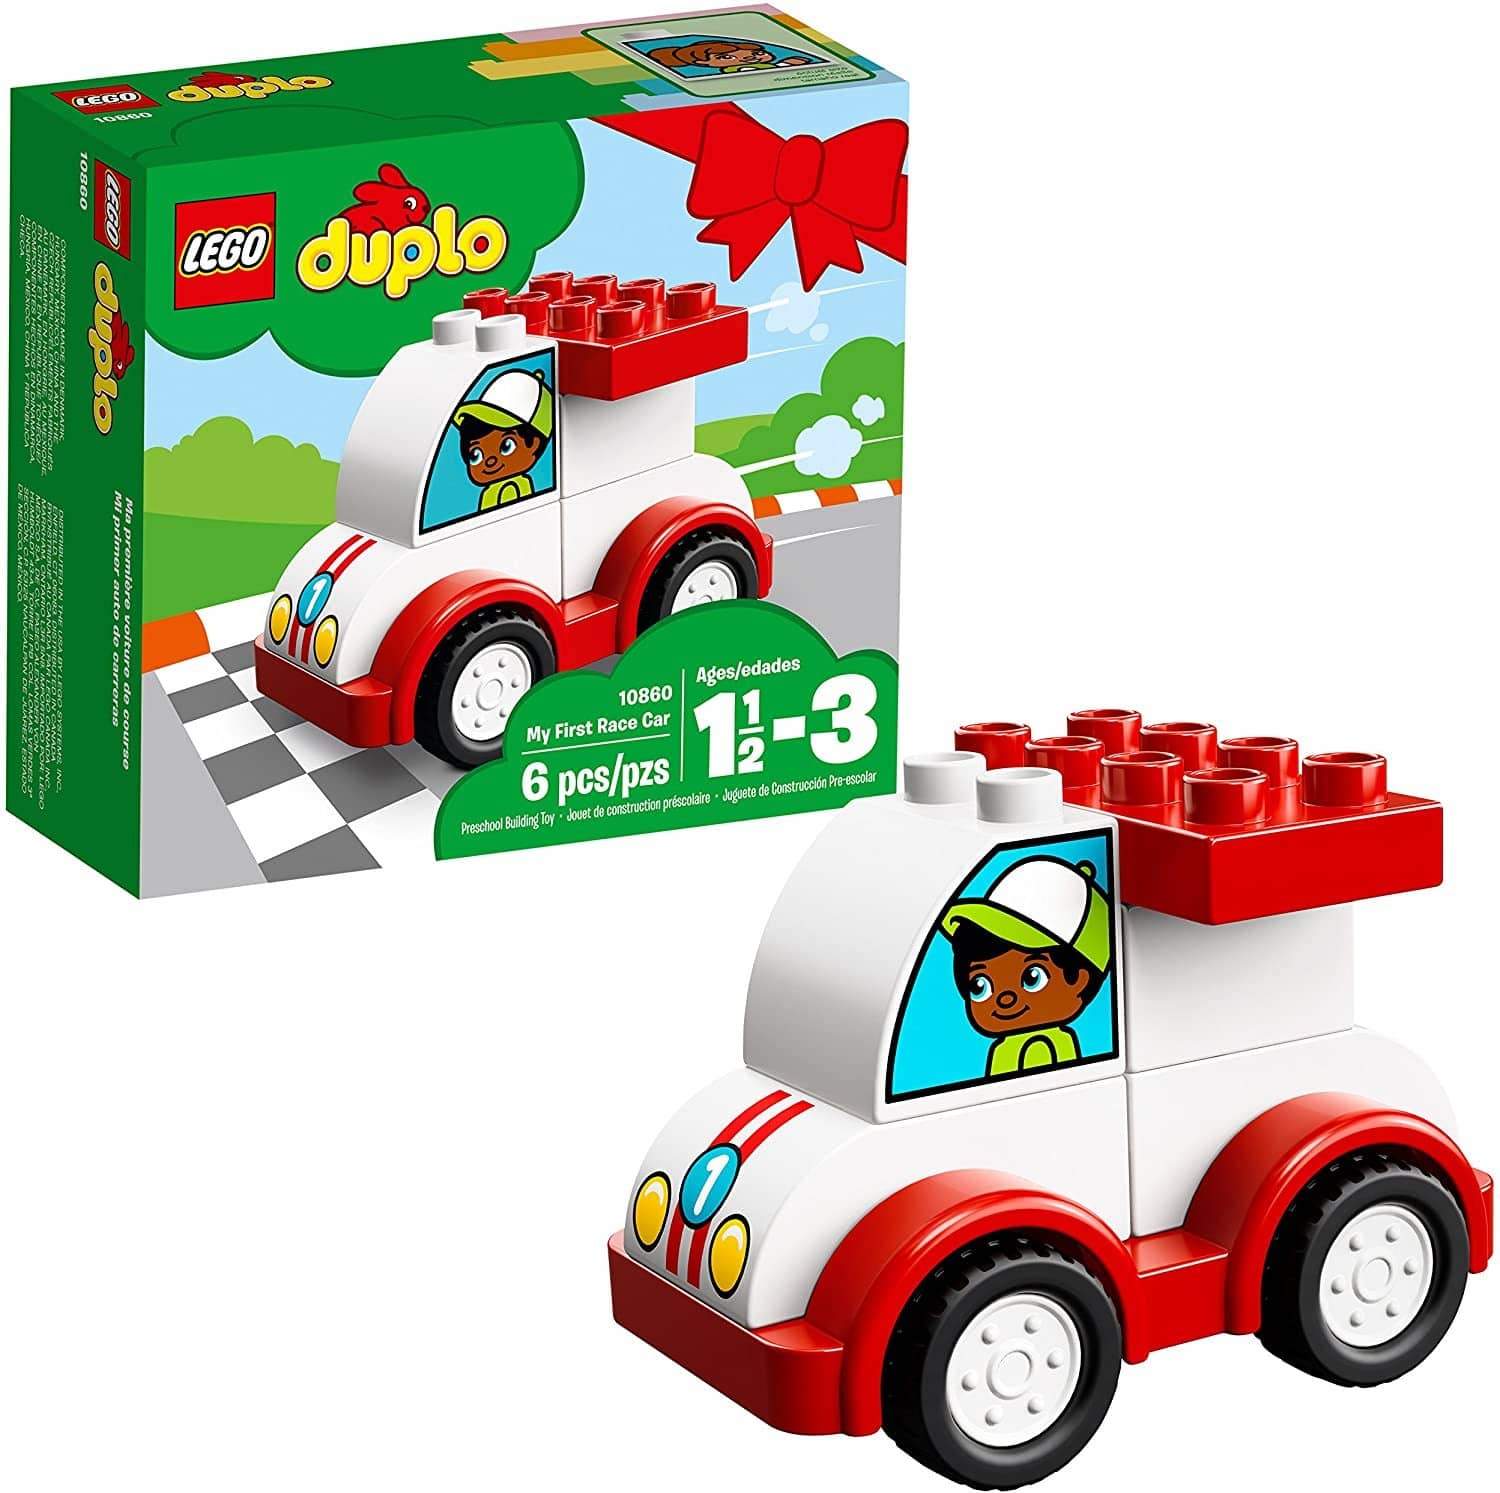 LEGO 10860: DUPLO: My First Race Car (6 Piece)-Kidding Around NYC